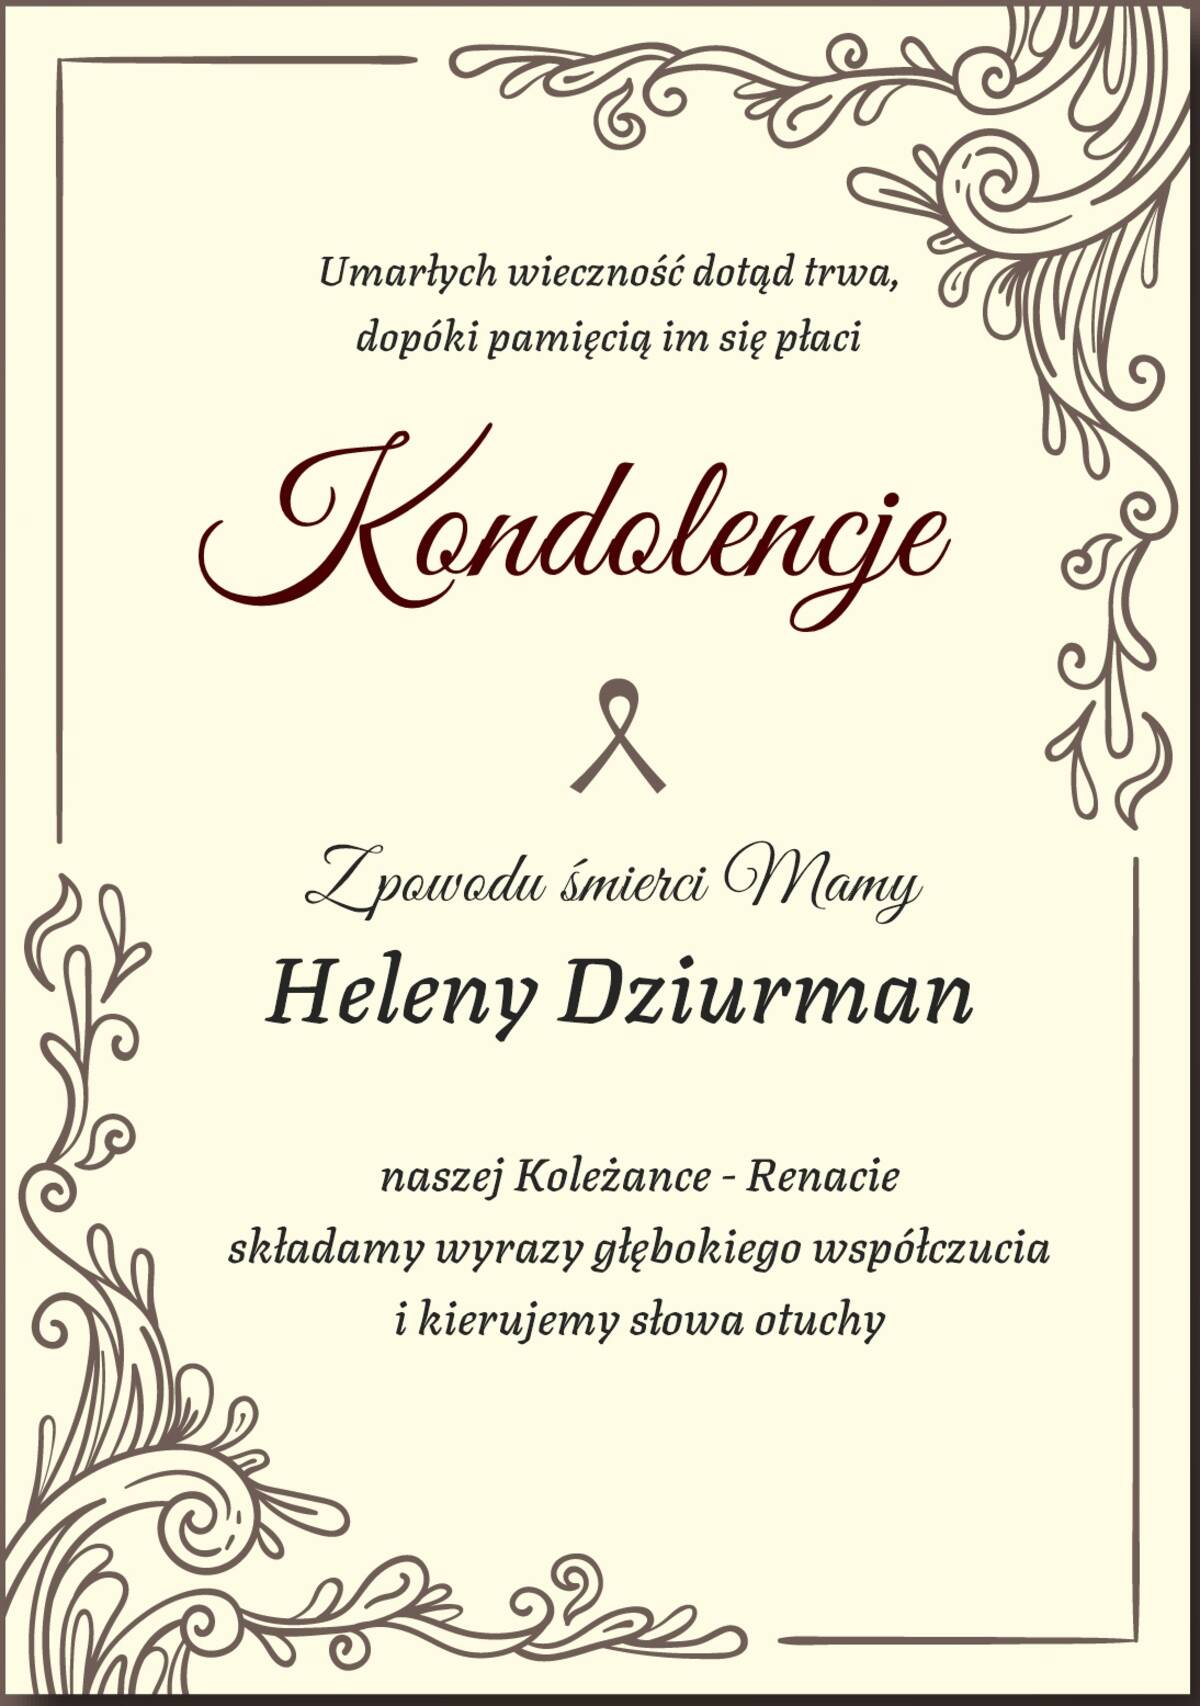 Grafika z kondolencjami dla Renaty Dziurman z powodu śmierci matki